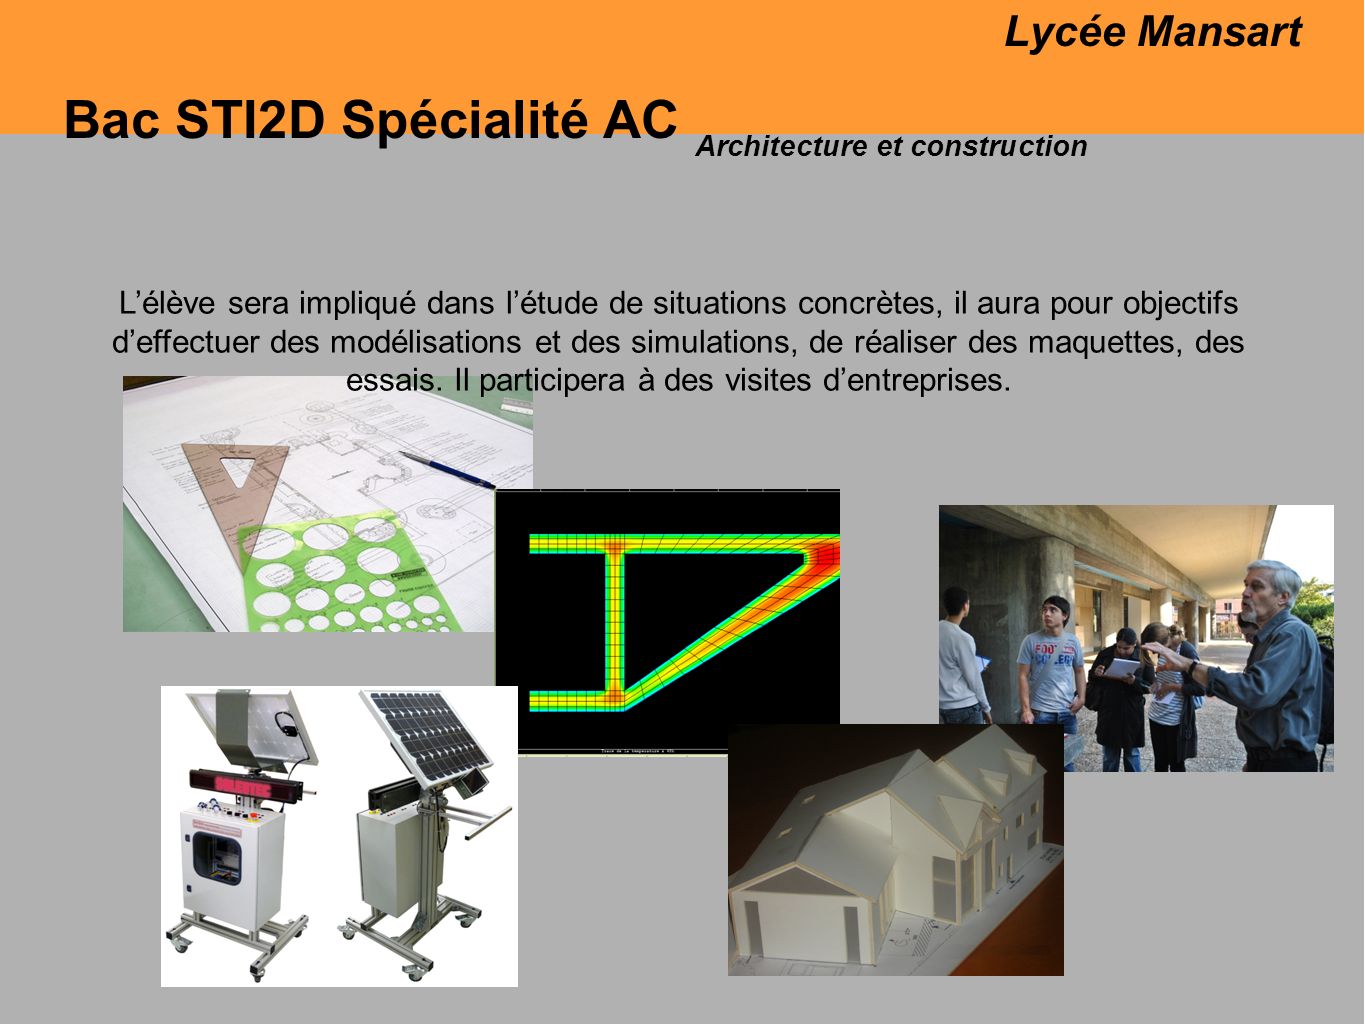 Bac STI2D Spécialité AC Lycée Mansart